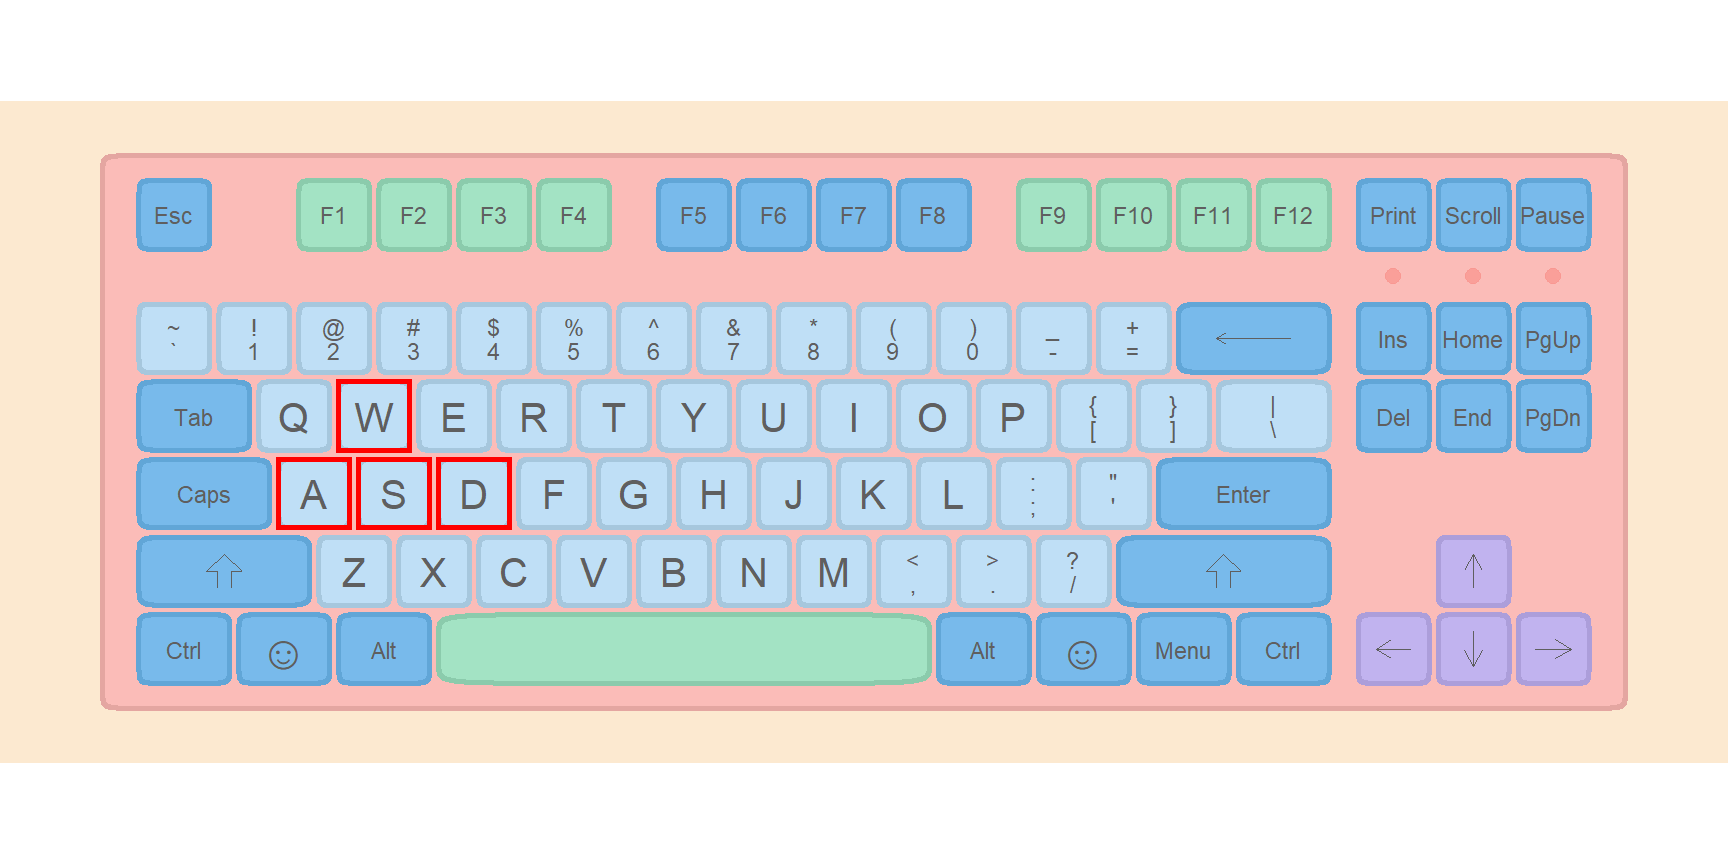 Highlight keyboard keys